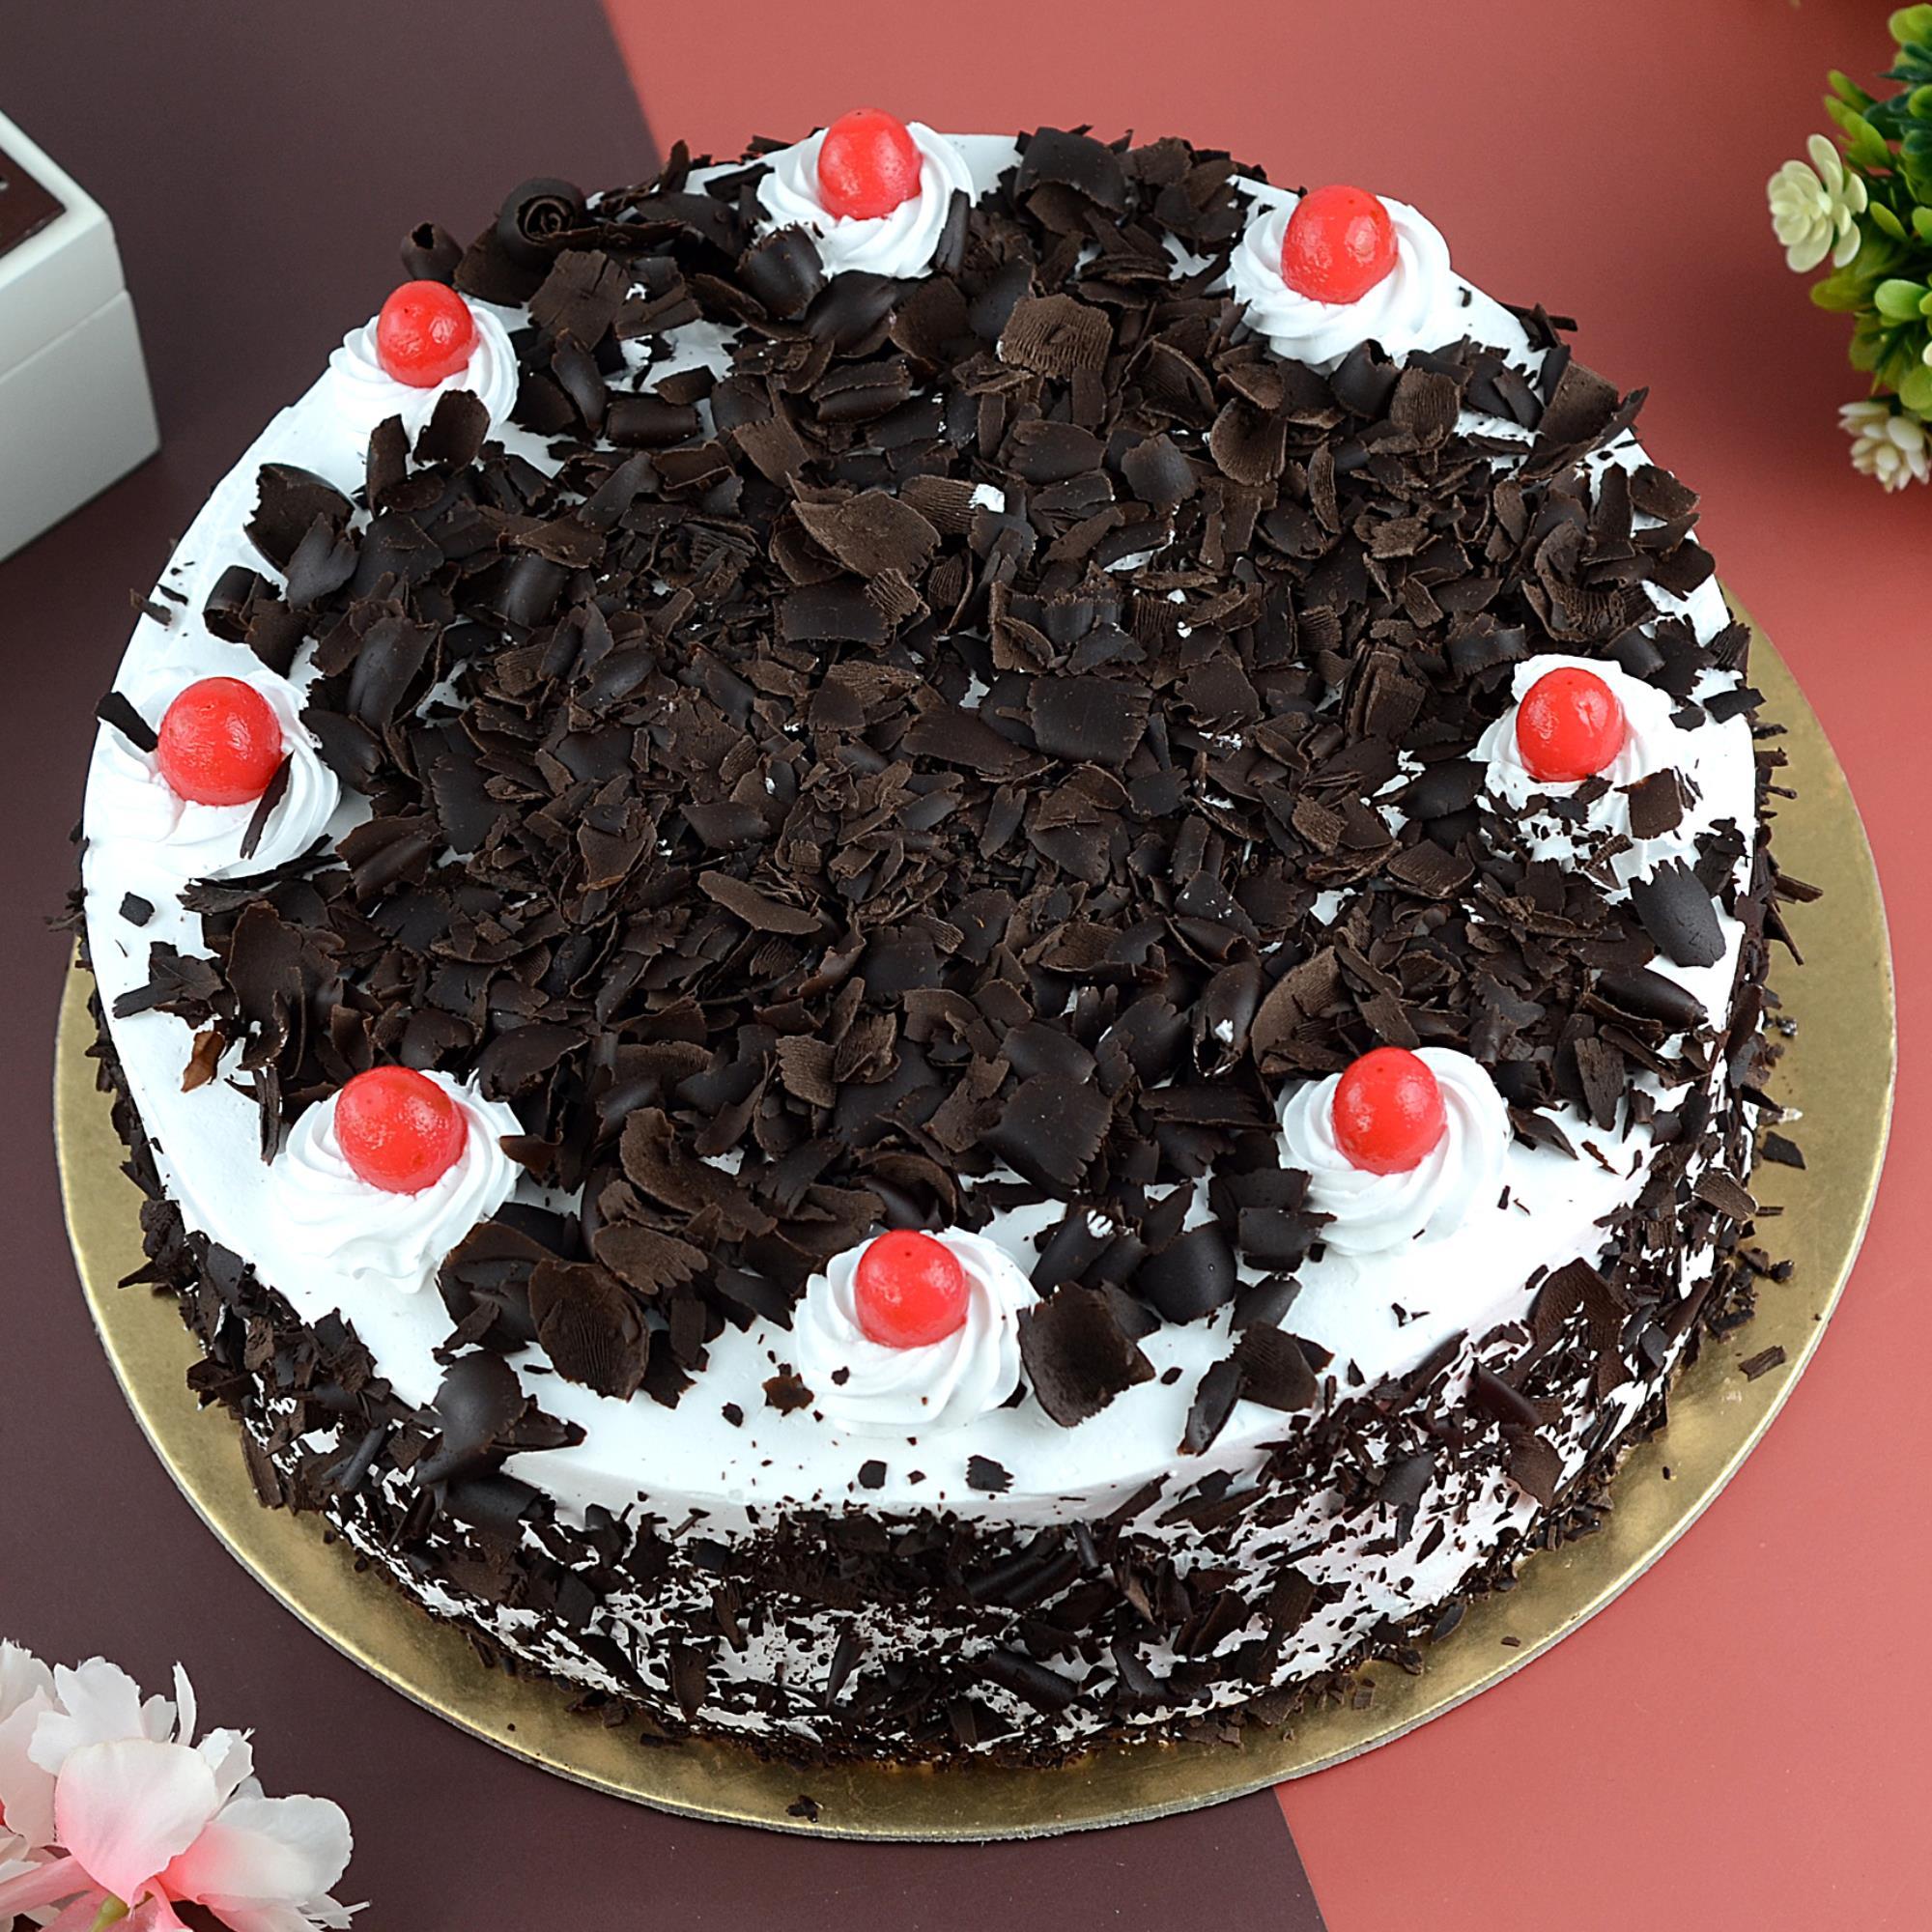 Black Forest Cake - 2 Kg